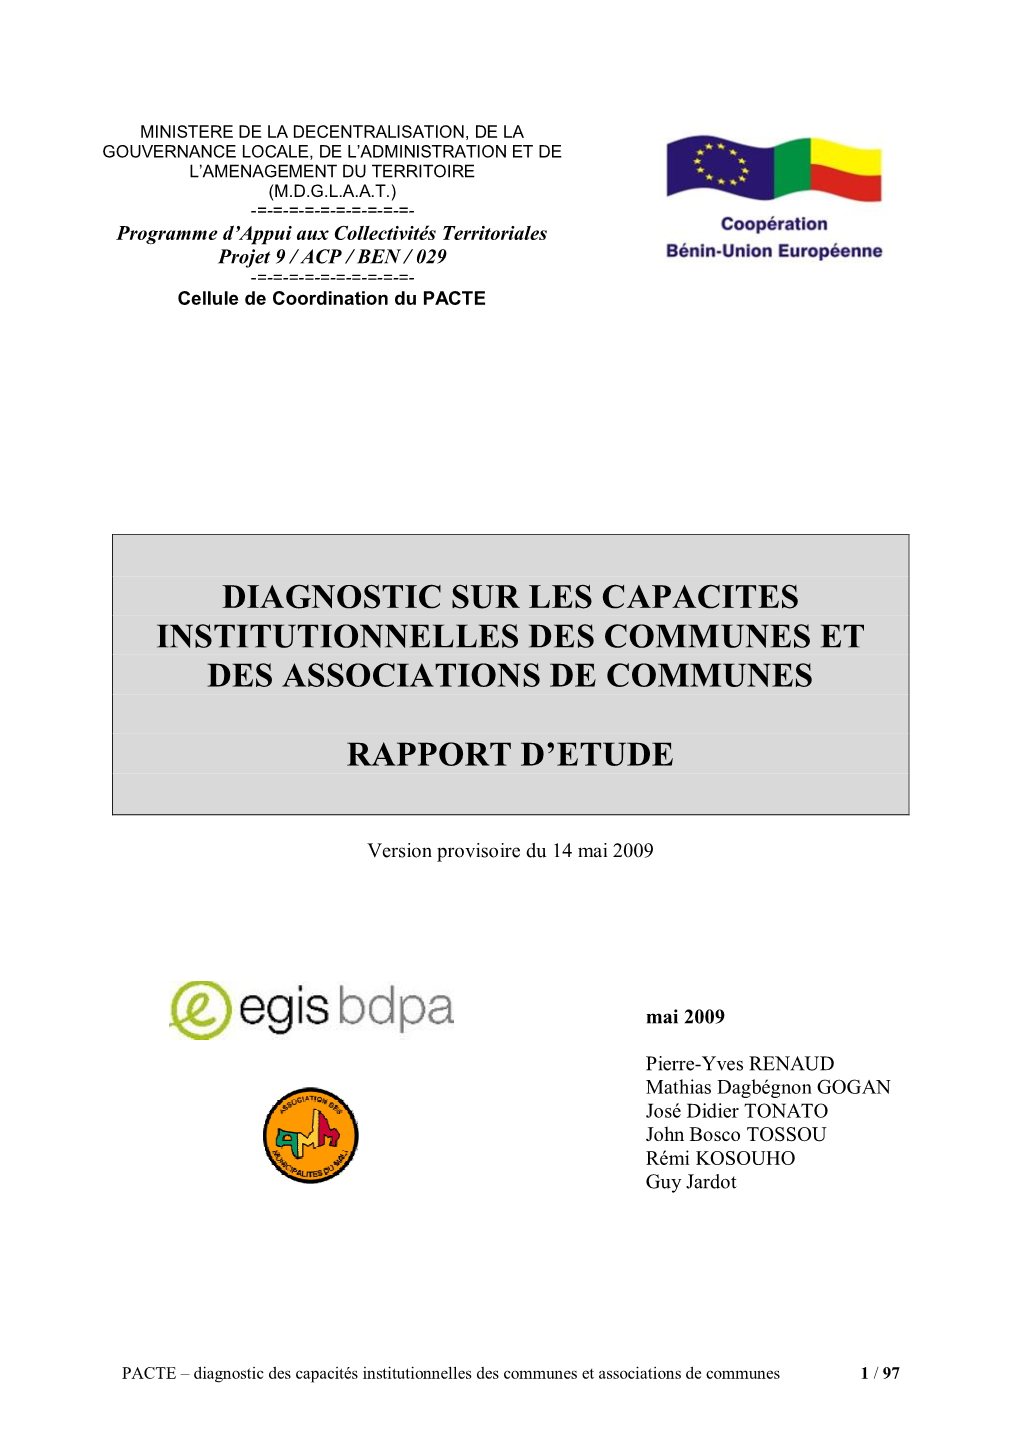 Diagnostic Sur Les Capacites Institutionnelles Des Communes Et Des Associations De Communes Rapport D'etude